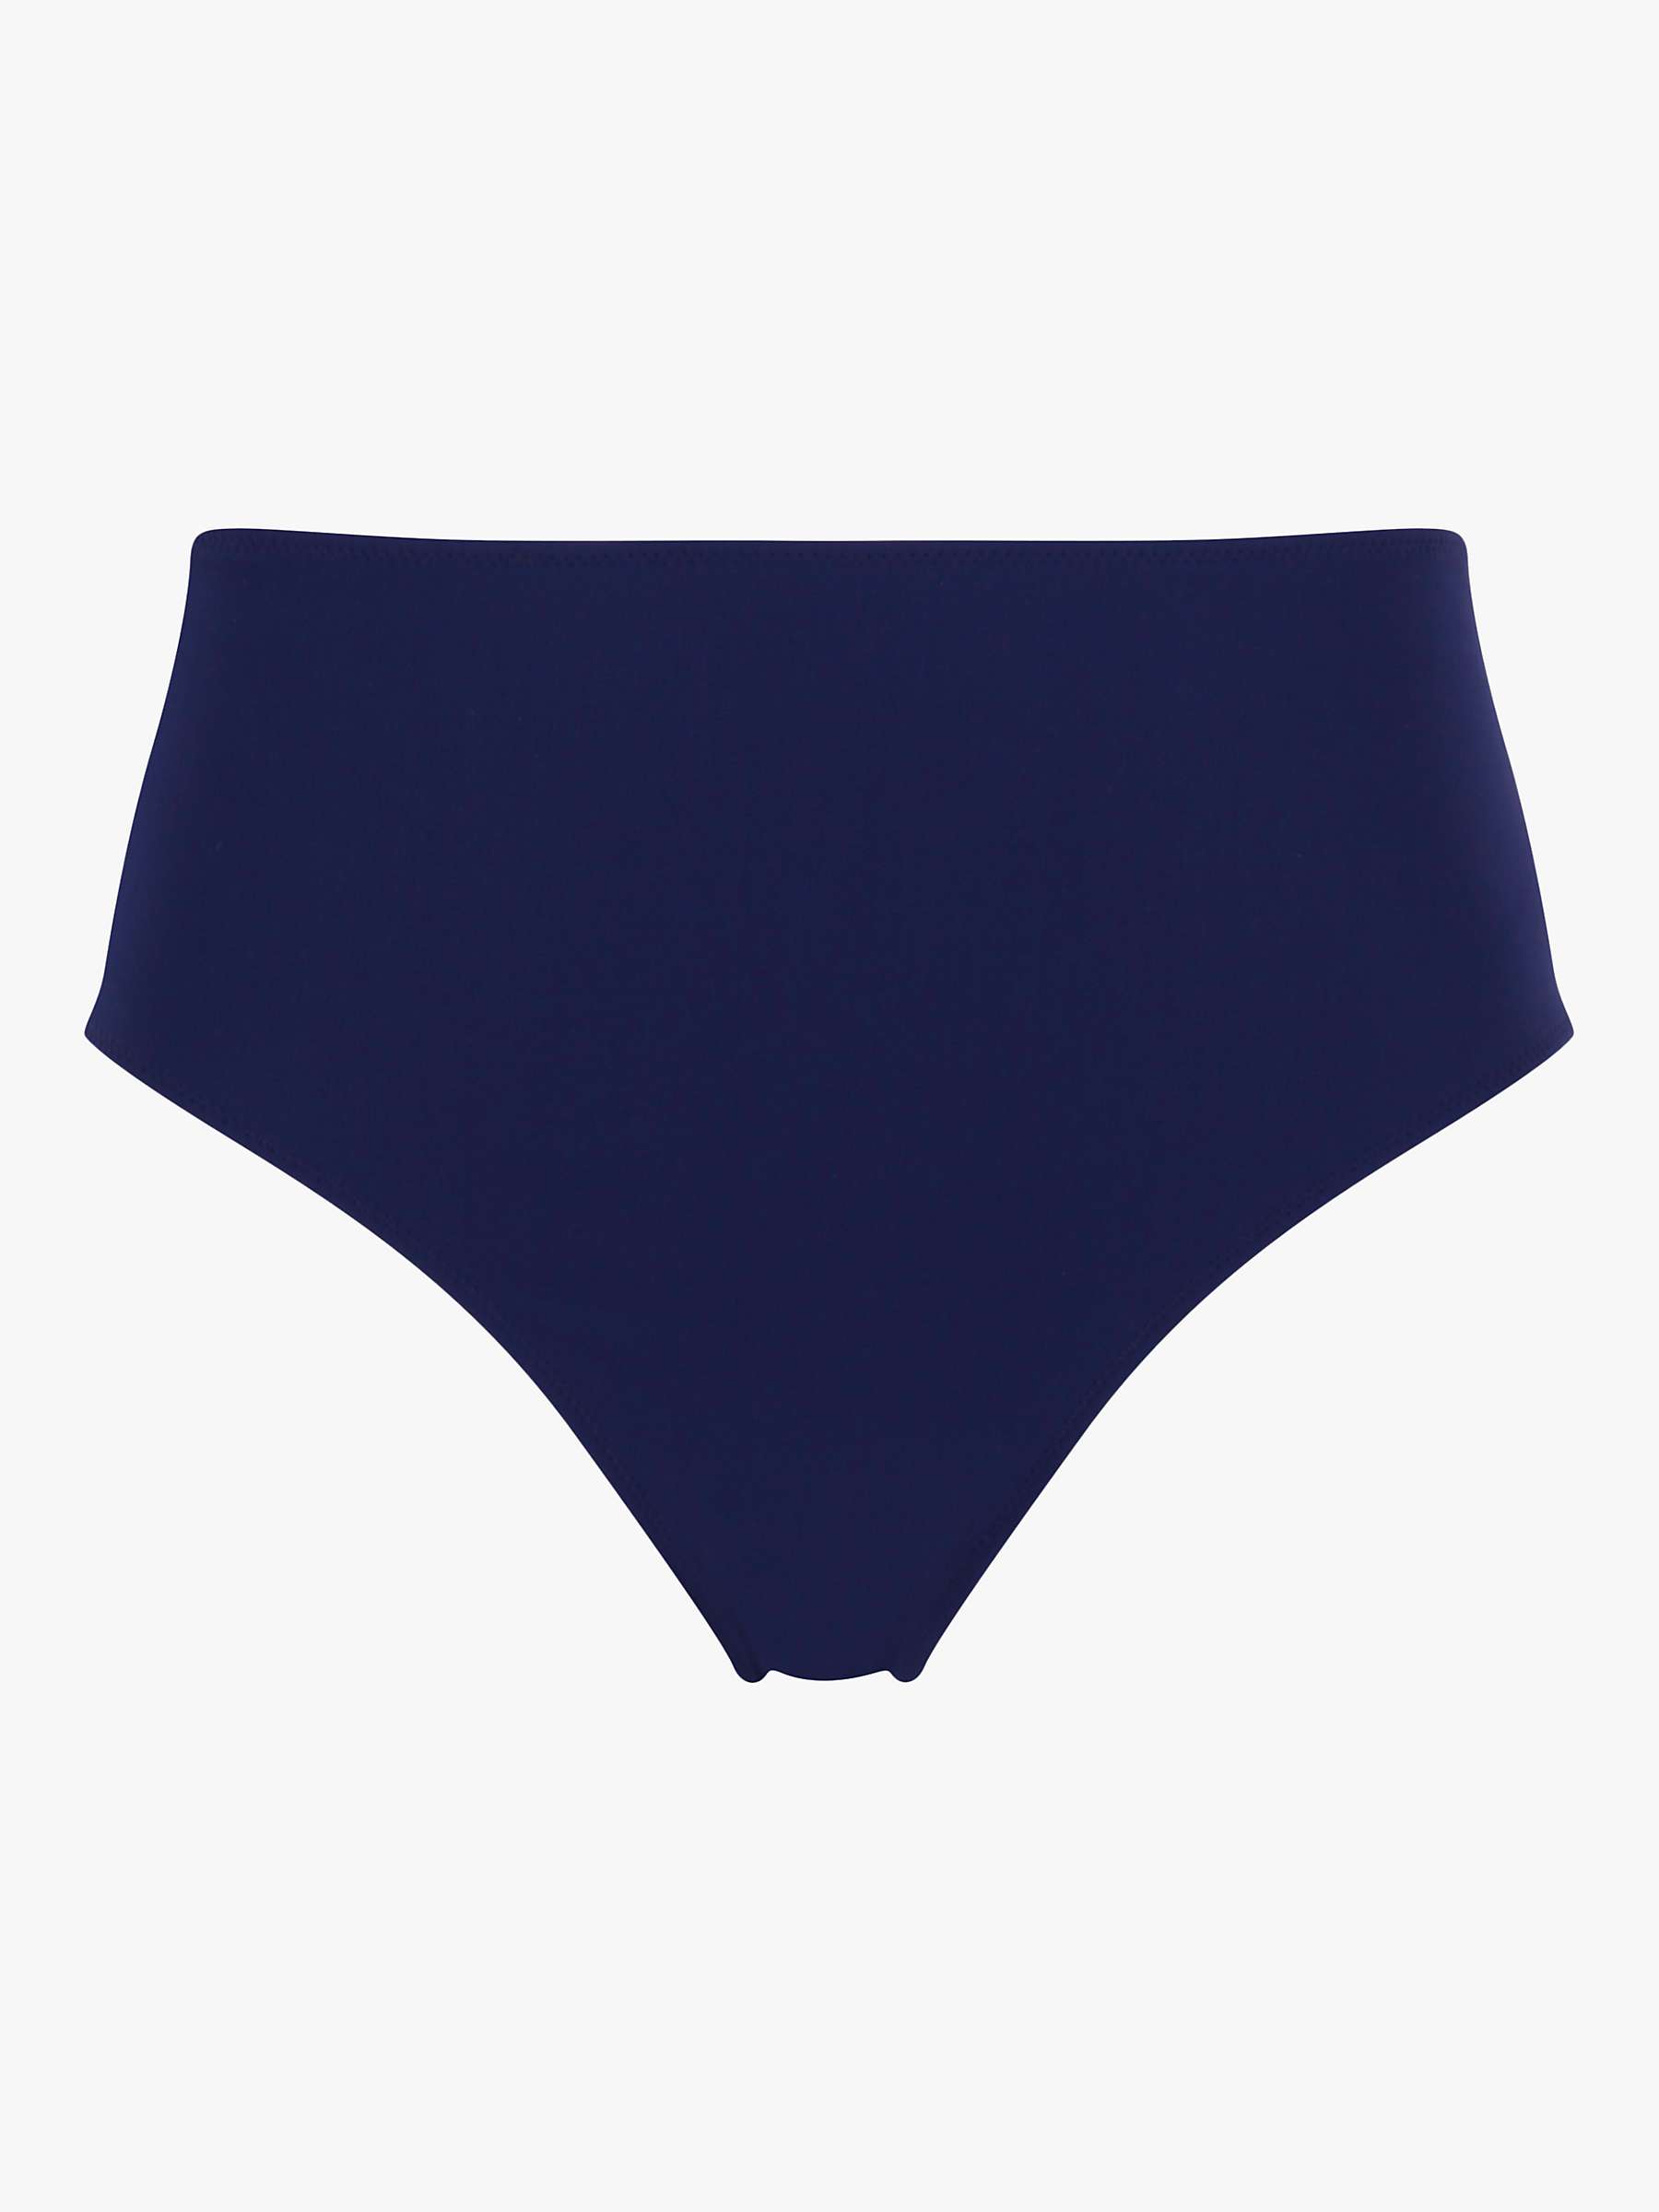 Buy Panache High Waist Bikini Bottoms, Azzuro Navy Online at johnlewis.com